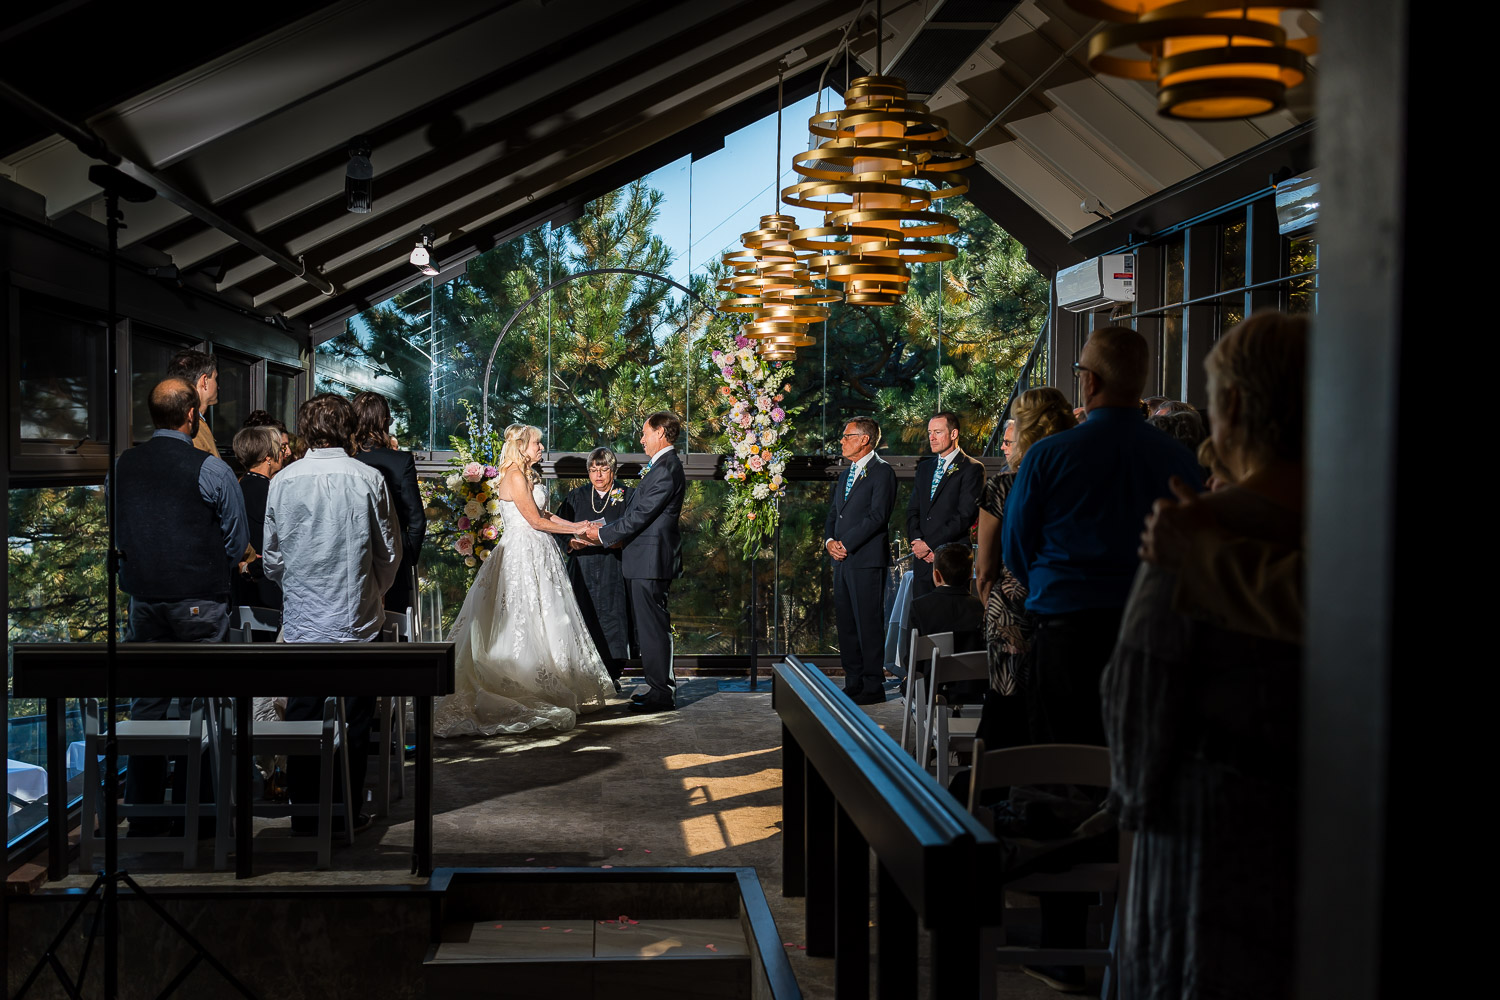 flagstaff restaurant wedding indoor ceremony under glass roof